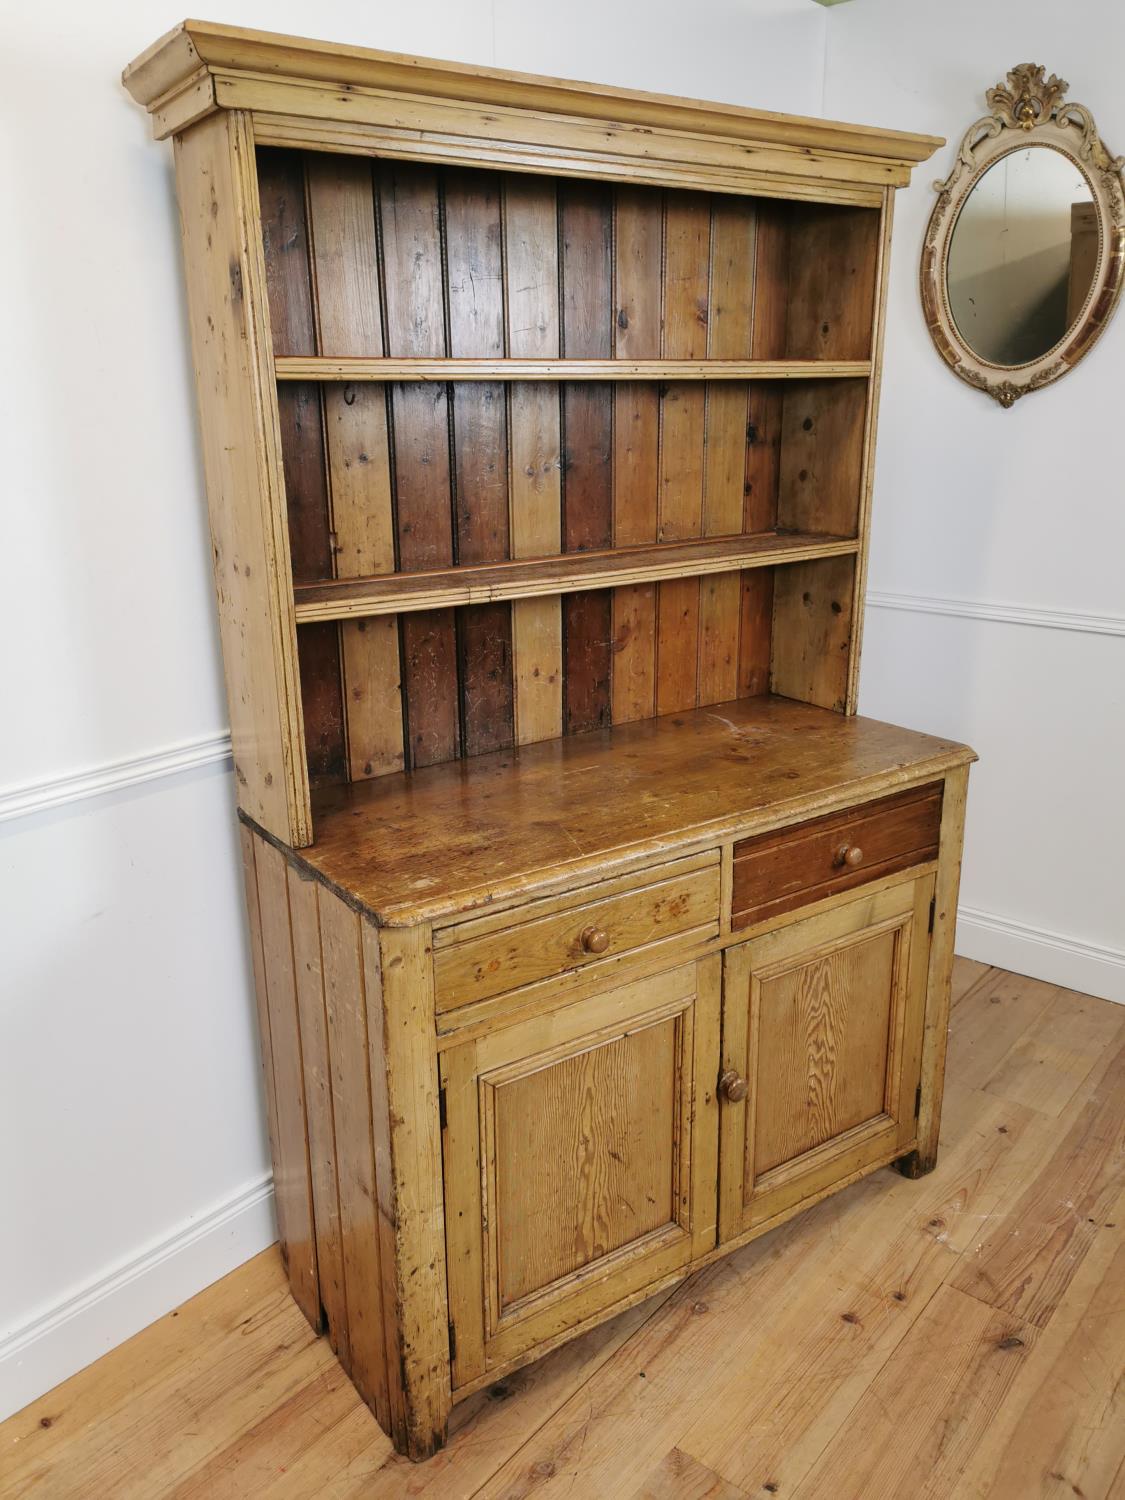 19th C. Irish pine kitchen dresser with open shelves